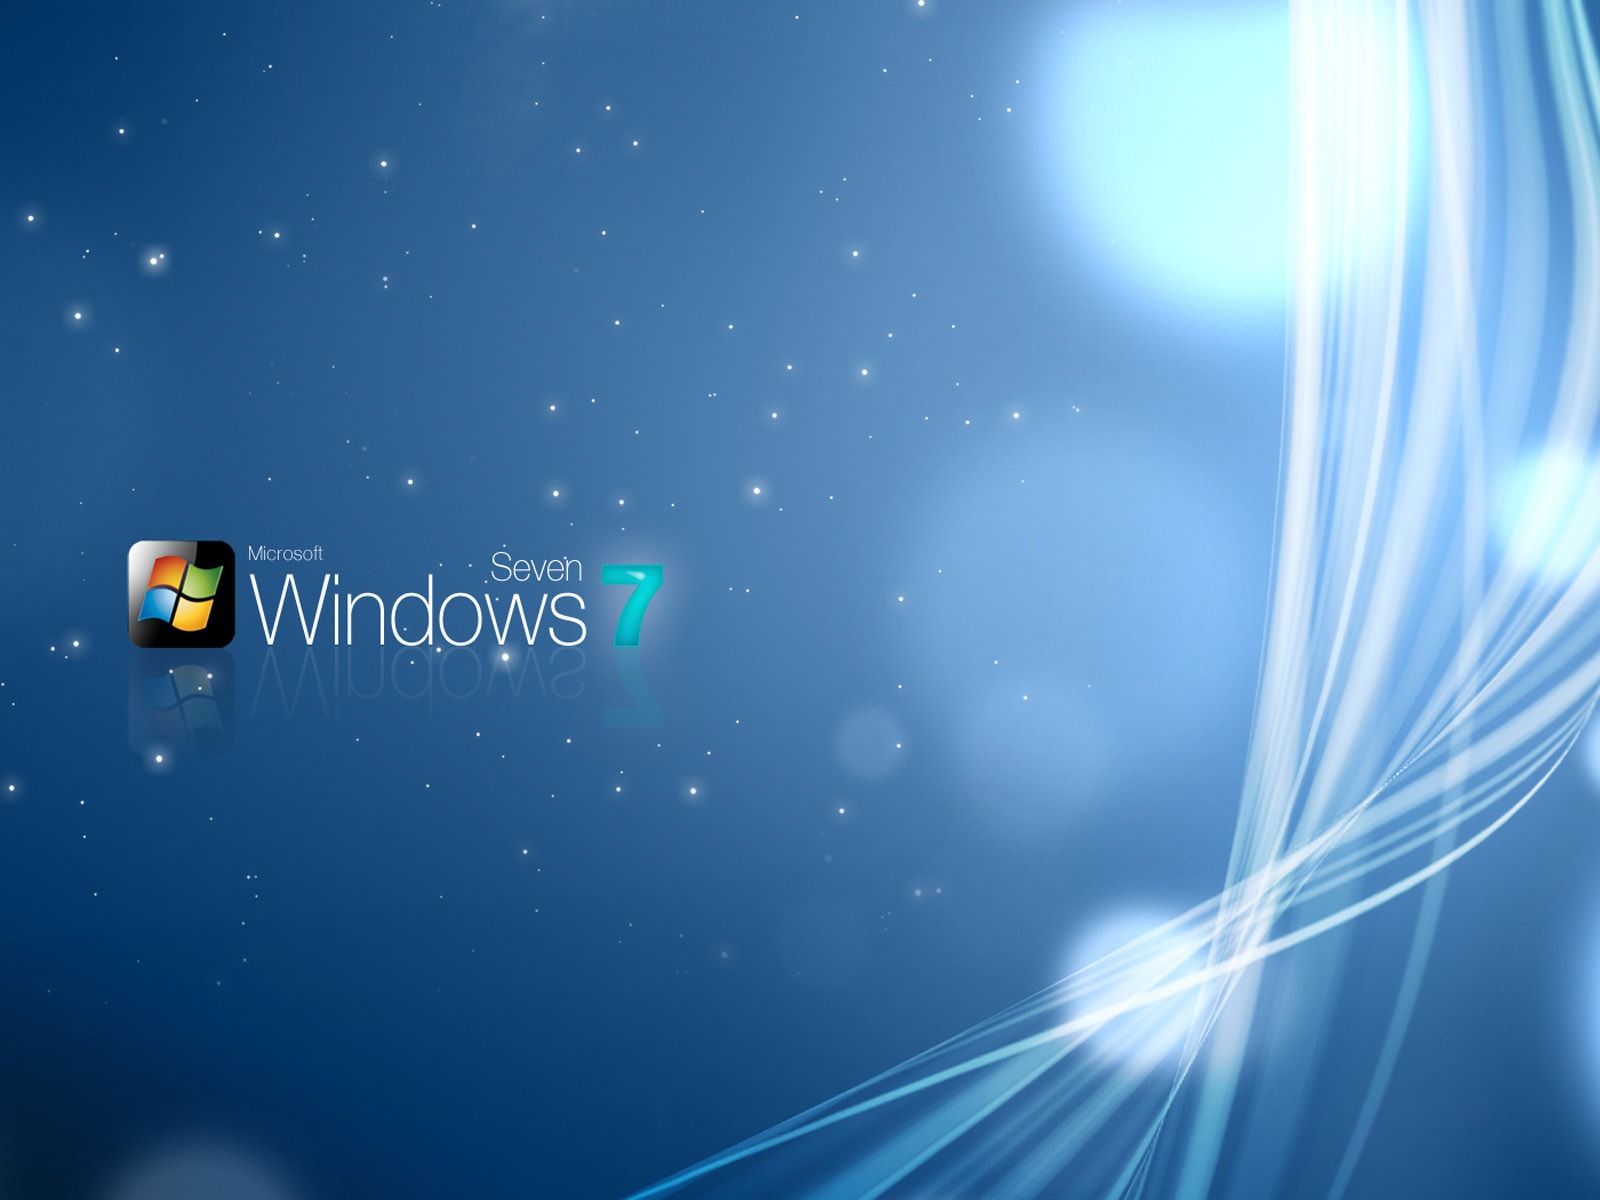 Windows7 theme wallpaper (2) #7 - 1600x1200